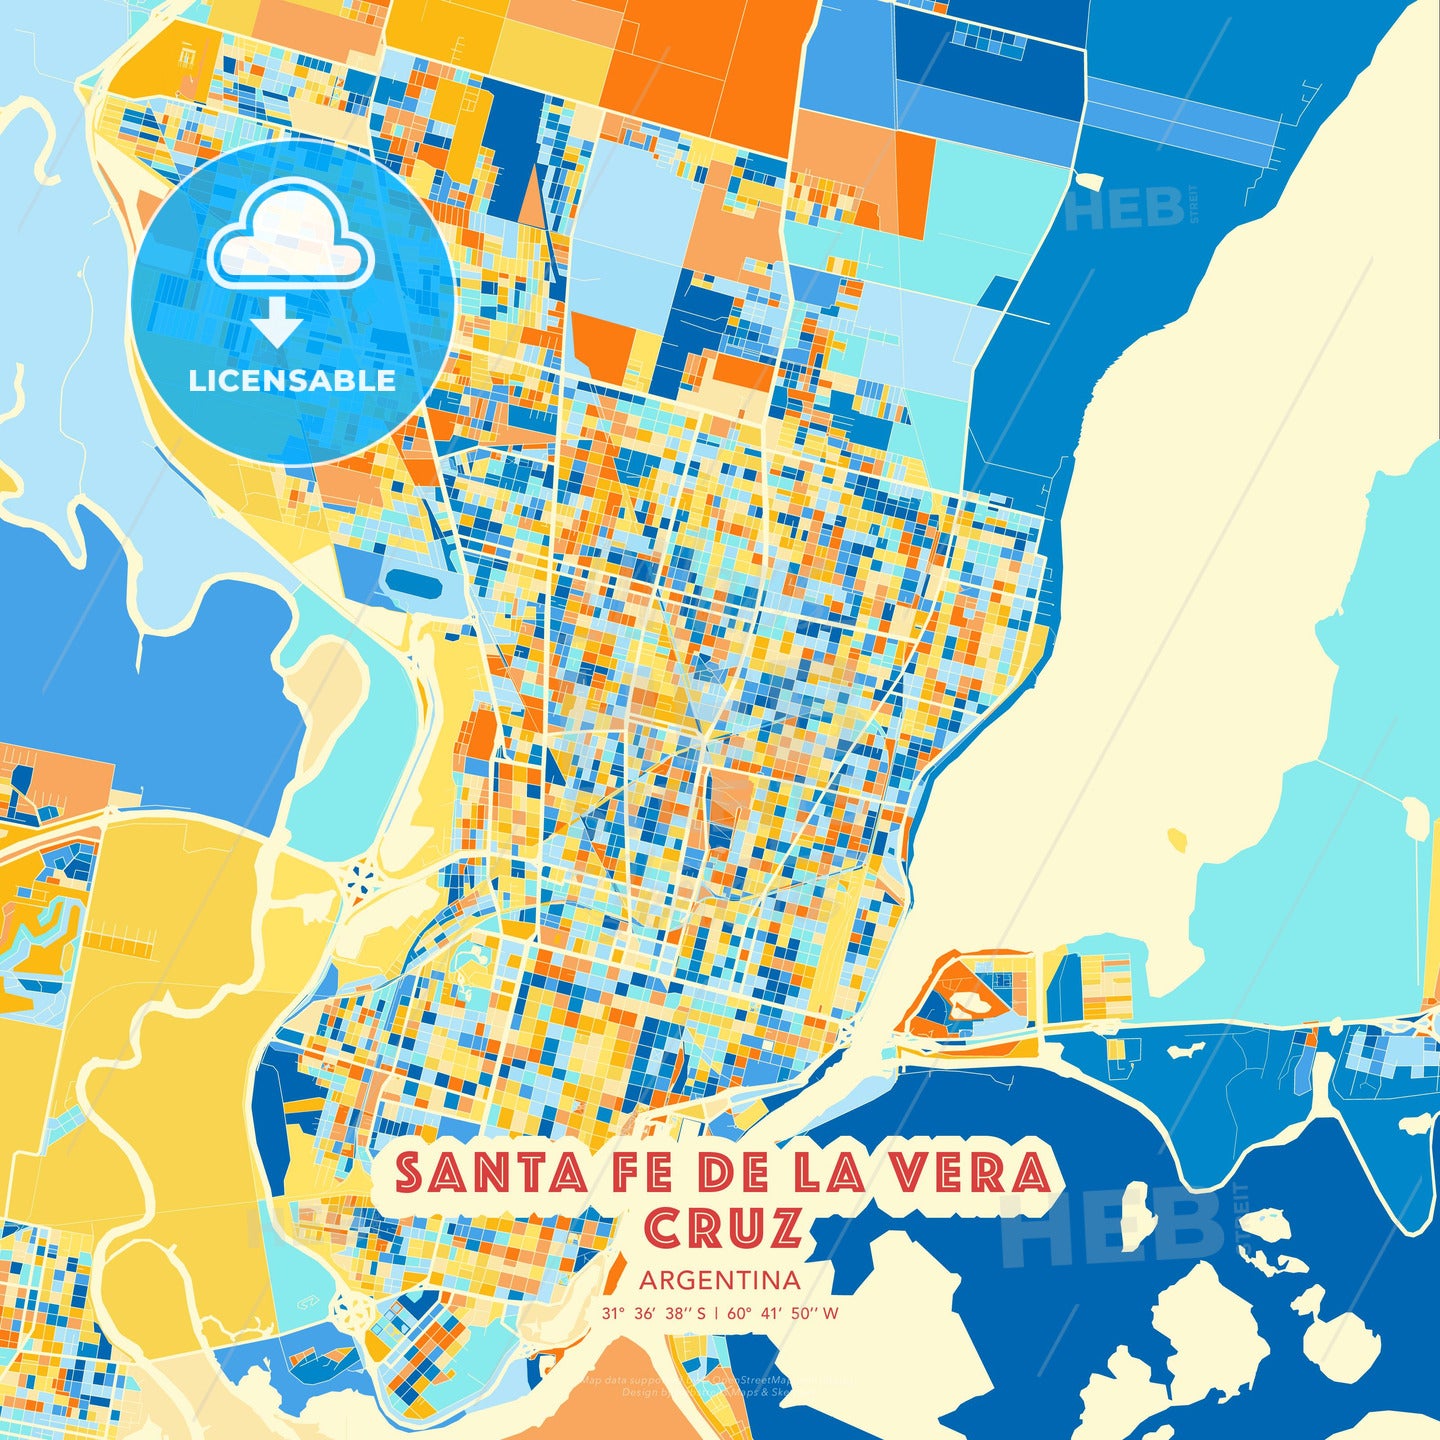 Santa Fe de la Vera Cruz, Argentina, map - HEBSTREITS Sketches